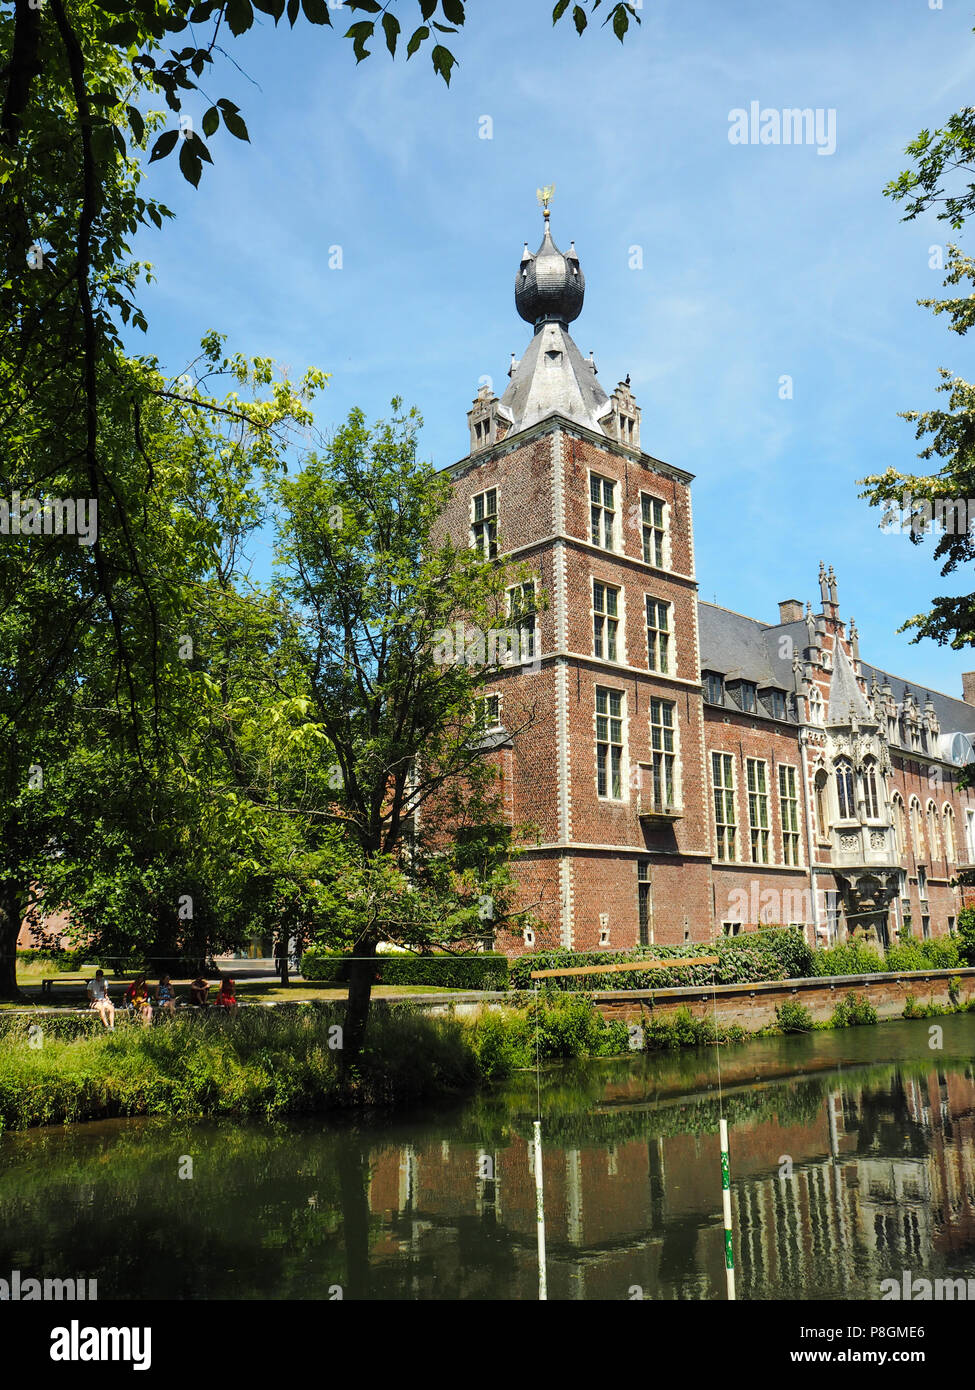 El Arenberg castillo situado junto a la ciudad de Leuven y la residencia de la Universidad Católica de Lovaina Foto de stock